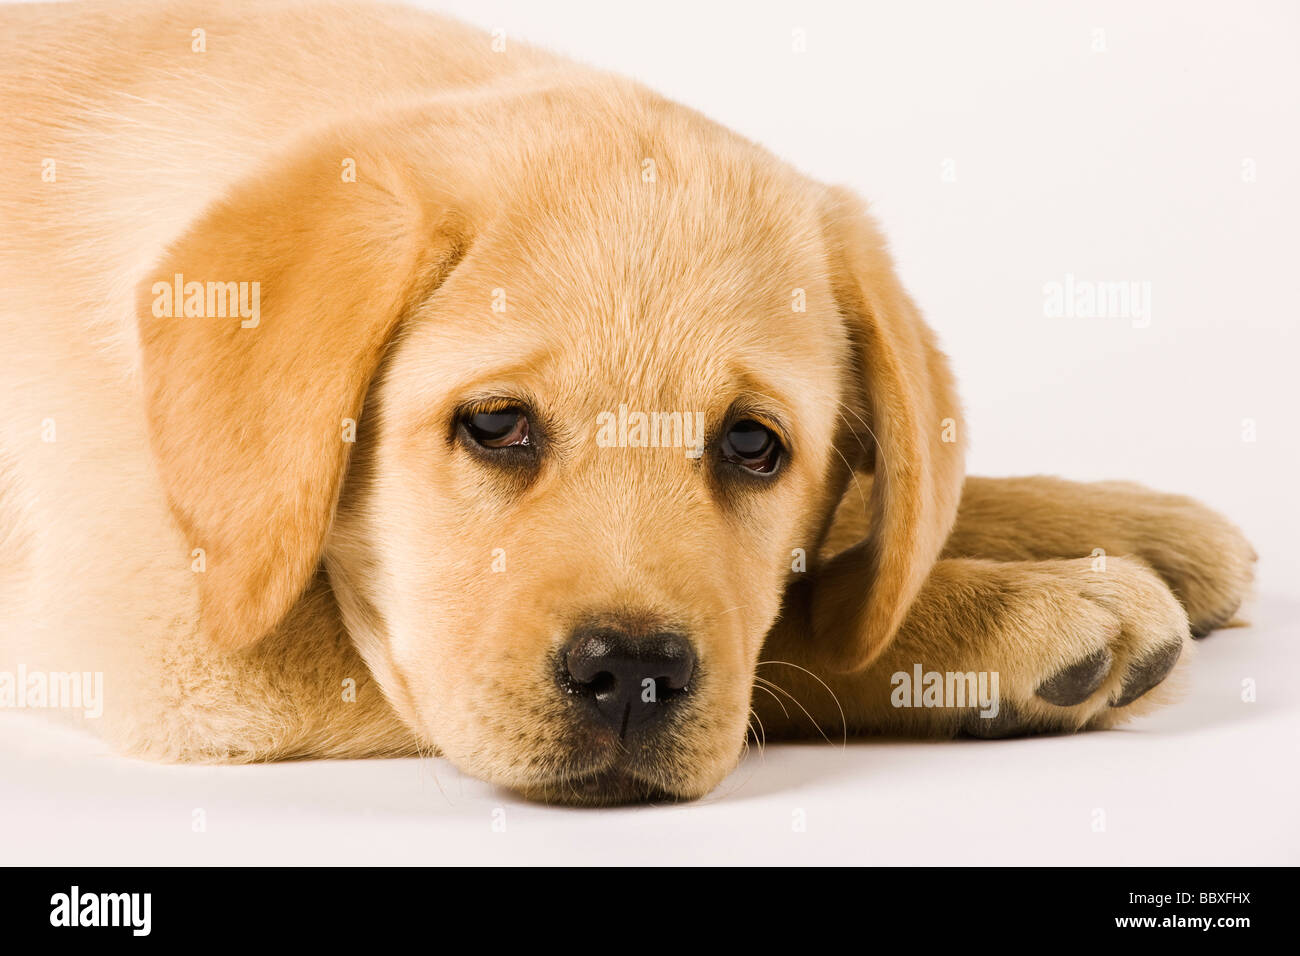 Golden Labrador Retriever cachorro Canis familiaris close up retrato de Labrador perros de trabajo populares Foto de stock